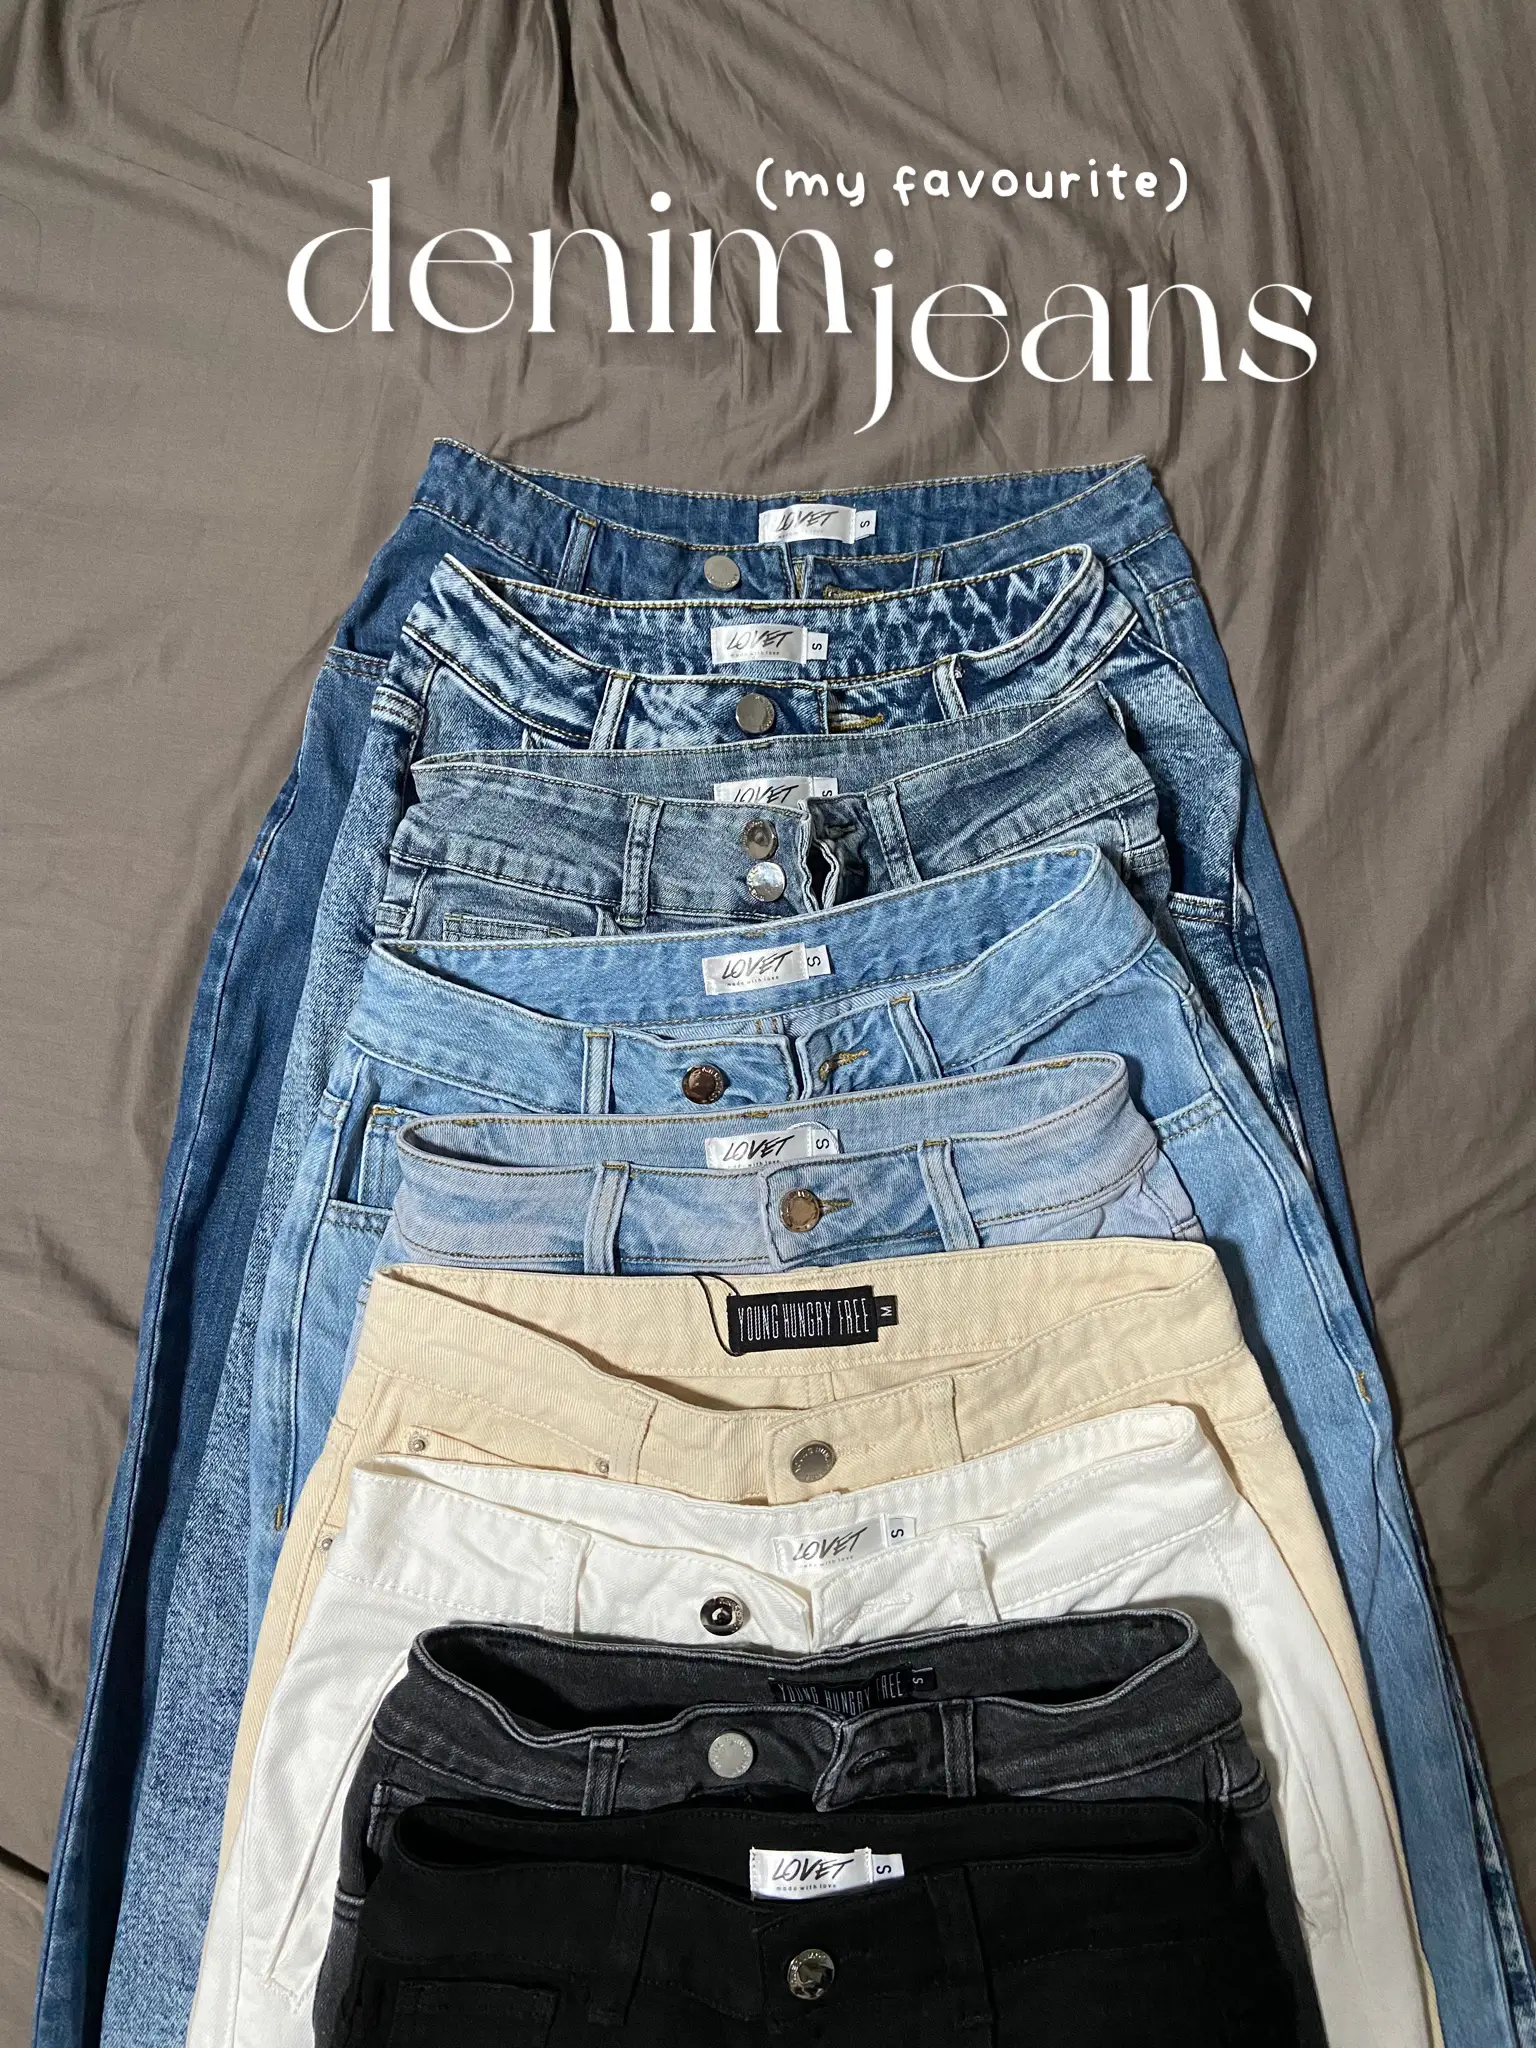 Womens express rerock jeans - Gem